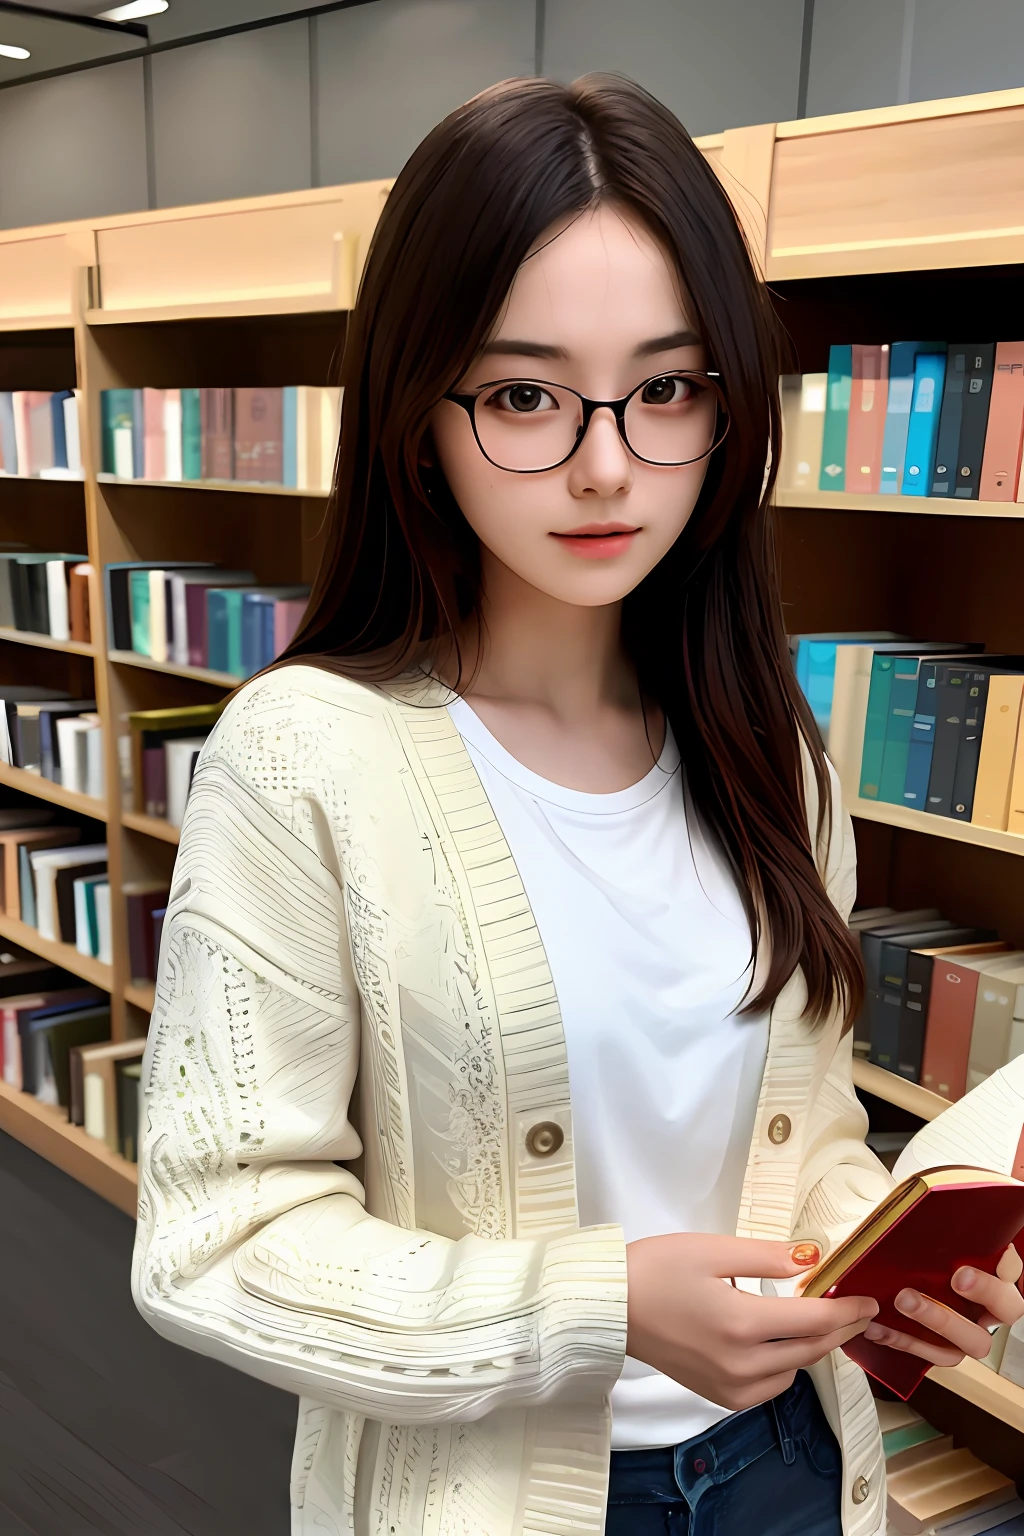 傑作, 最好的品質, 極為細緻的CG統一8k壁紙,
一個美麗的女孩, 讀一本書,
大學生, 眼鏡,
圖書館, 詳細背景,